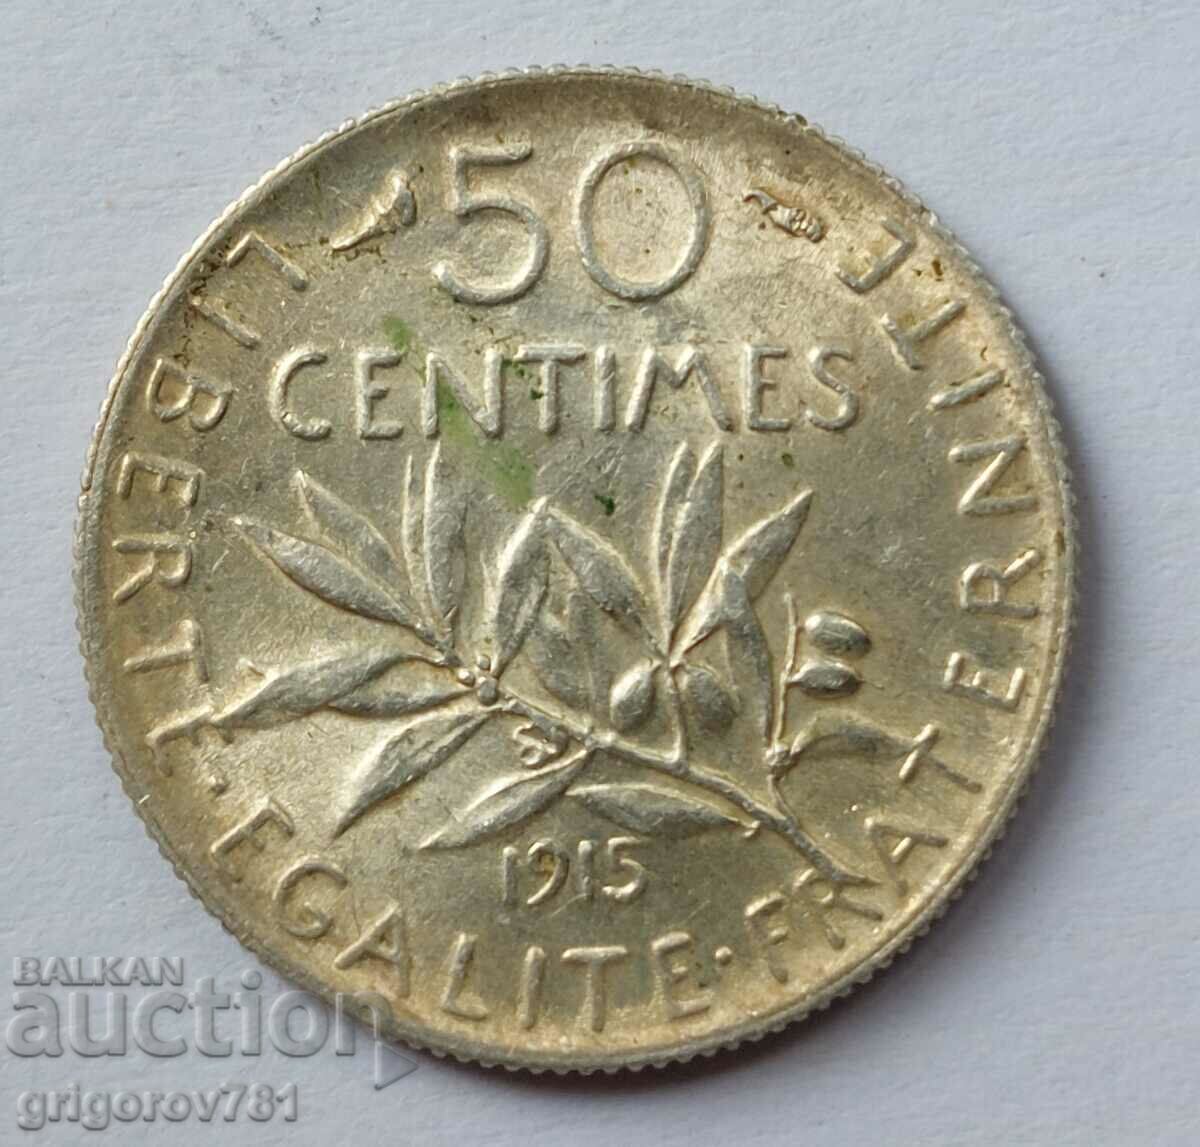 Ασημένιο 50 εκατοστά Γαλλία 1915 - ασημένιο νόμισμα №62